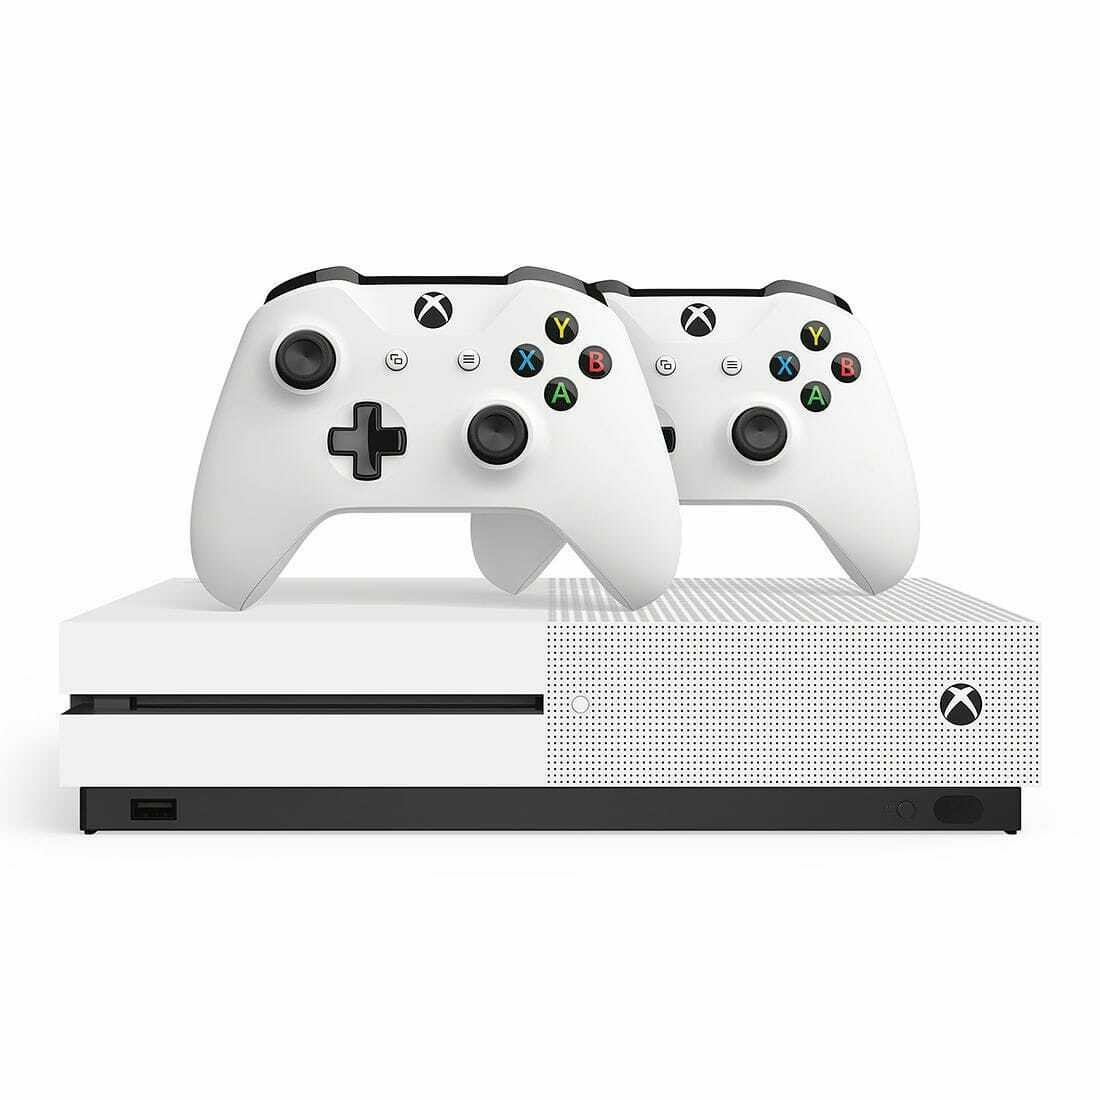 Immagine promozionale di Xbox One S